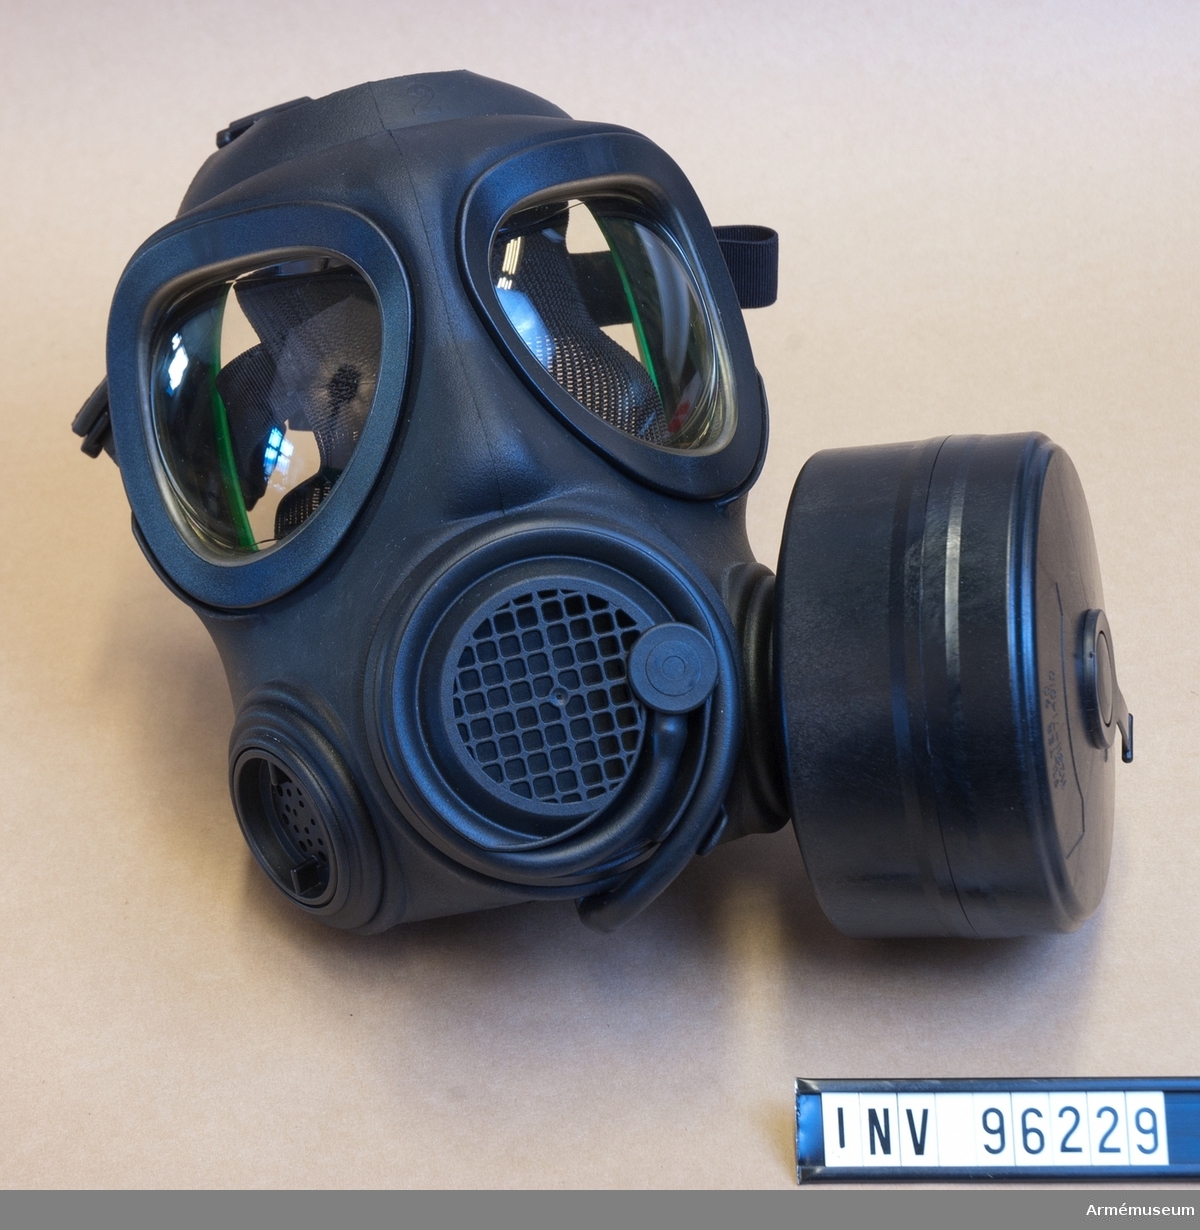 Skyddsmask tillhörande skyddsutrustning 90 B. Oanvänd.
Storlek 2 - Medium. På insidan sitter ett grönt plaststöd.
Med Filter 90 (m/1990) M 2311-714010-1.

Tillförsel av dryck möjlig genom den ihopvirade slangen vilket skiljer sig från den civila varianten A4 liksom att den civila endast har ett uttag för filter där den militära har två. 
Masken är kompatibel med NATO:s 40 mm filter STANAG 4155:1981.

Masken skyddar ansikte och andningsvägar mot biologiska (Virus) och kemiska stridsmedel. Även resistent mot radioaktivt damm, tårgas, sotpartiklar och värmestrålning. Forsheda har tillverkat över 700 000 masker av modellen till det svenska försvaret, polisen och räddningstjänsten och har normalt 25 års hållbarhet under rätt förvaringsförhållanden.